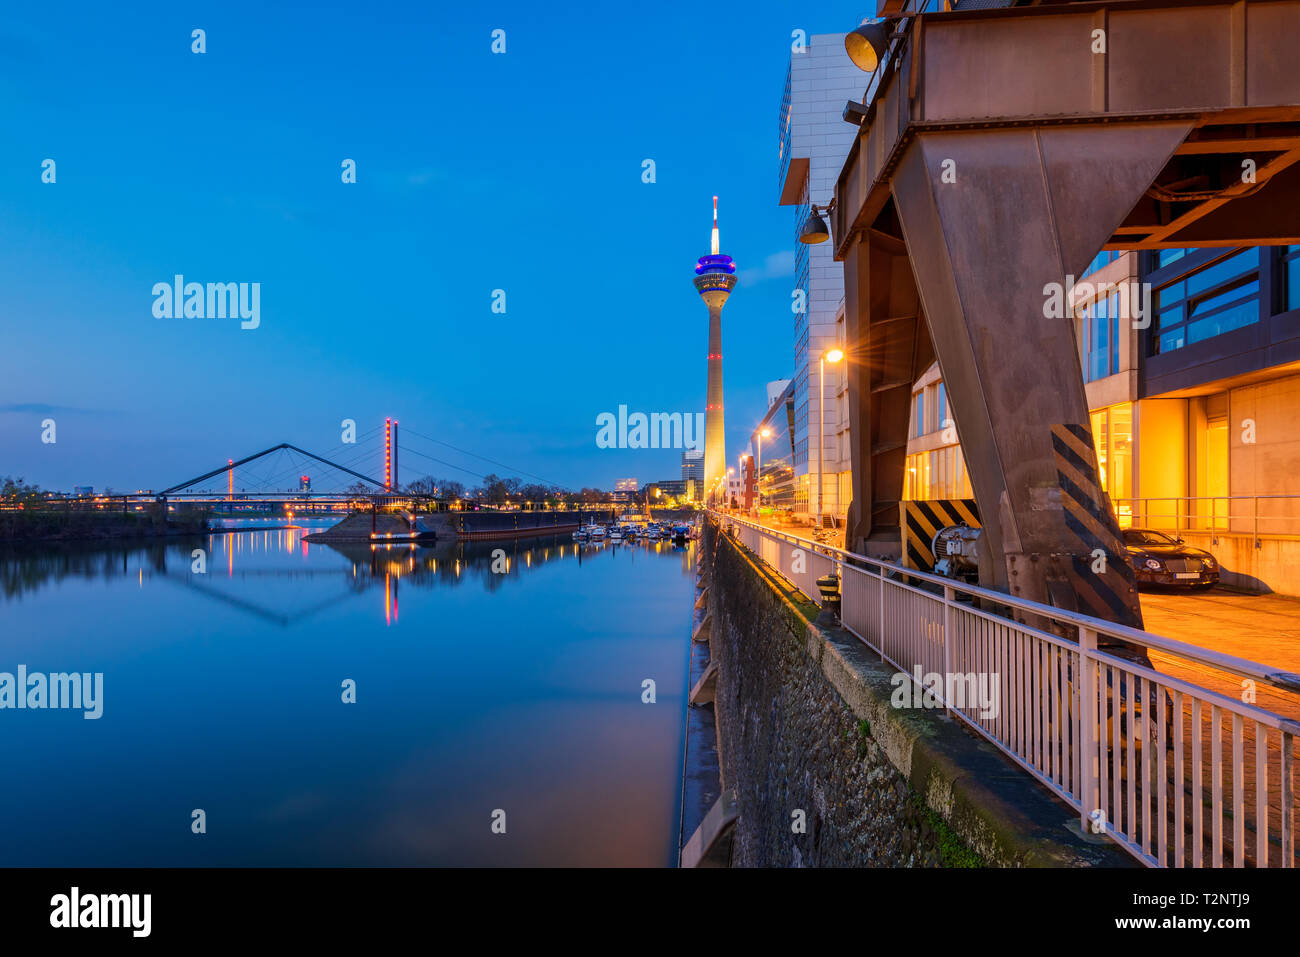 Hafen Düsseldorf Deutschland mit berühmten rheinturm Turm in der Dämmerung Stockfoto